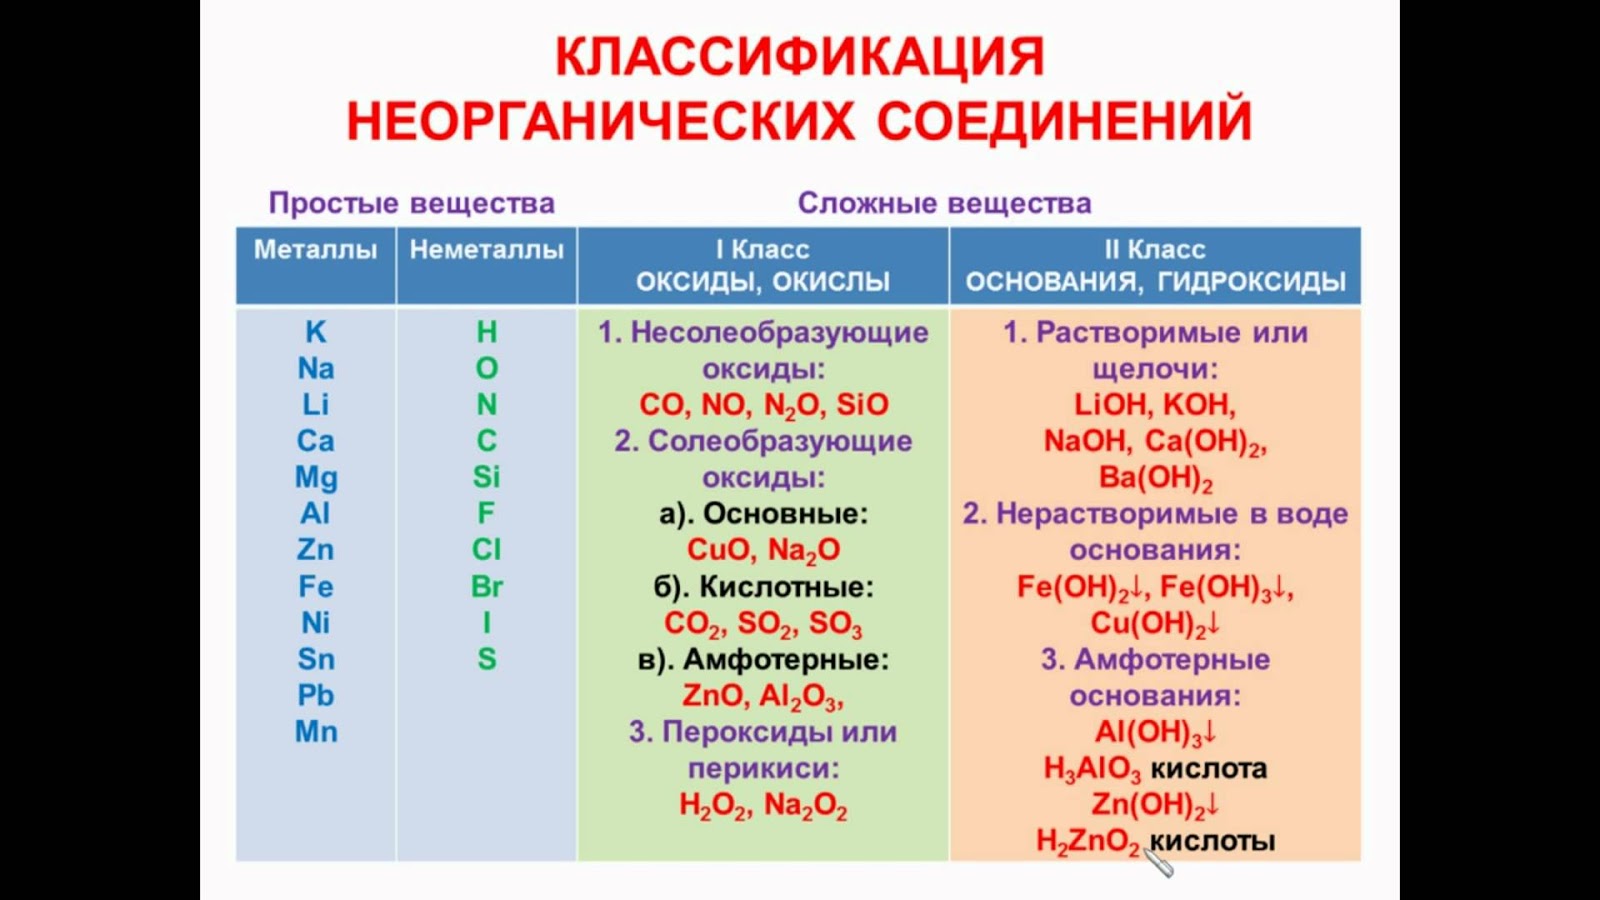 Неорганические соединения какие есть. Классификация классов неорганических соединений. Классификация неорганических соединений таблица. Классификация химических соединений 9 класс с примерами. Неорганические соединения номенклатура 9 класс химия.